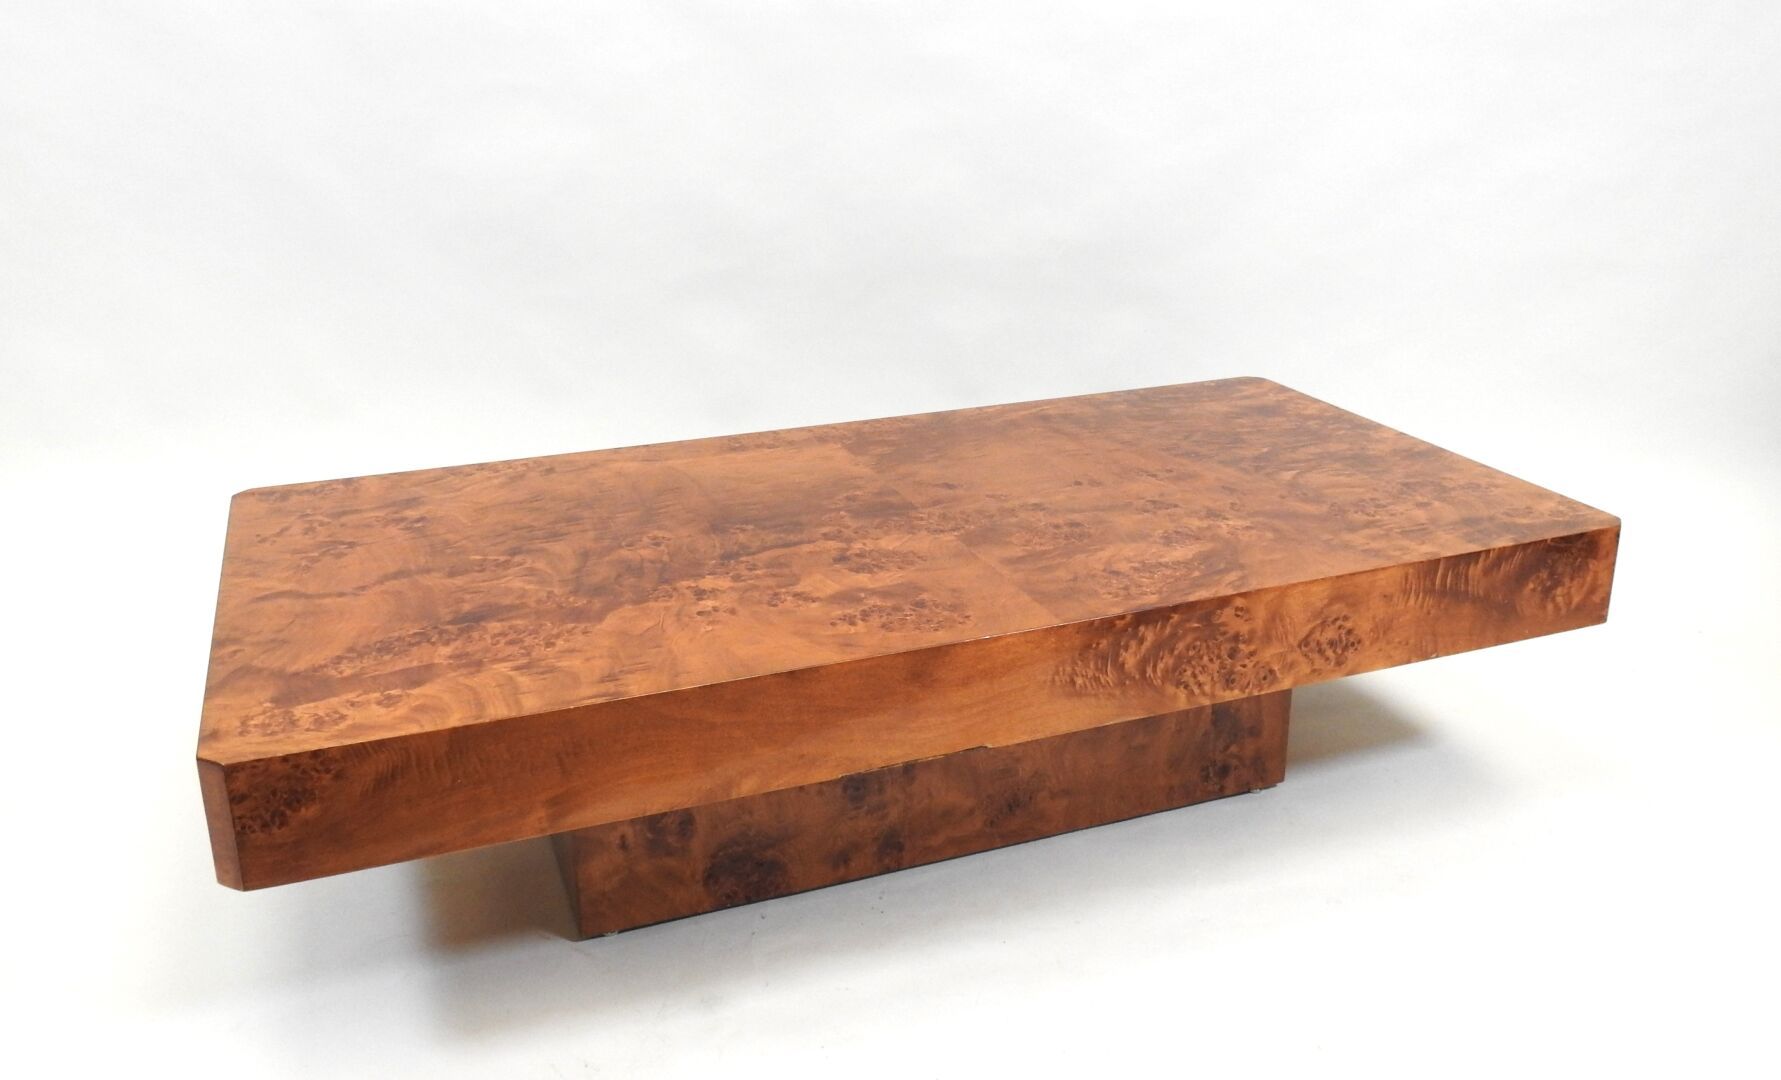 Null 软木、刨花板和毛边饰面的长方形咖啡桌，有斜角。
制作于80年代和90年代。
30 x 120 x 60厘米。
(清漆有划痕，木皮丢失）。